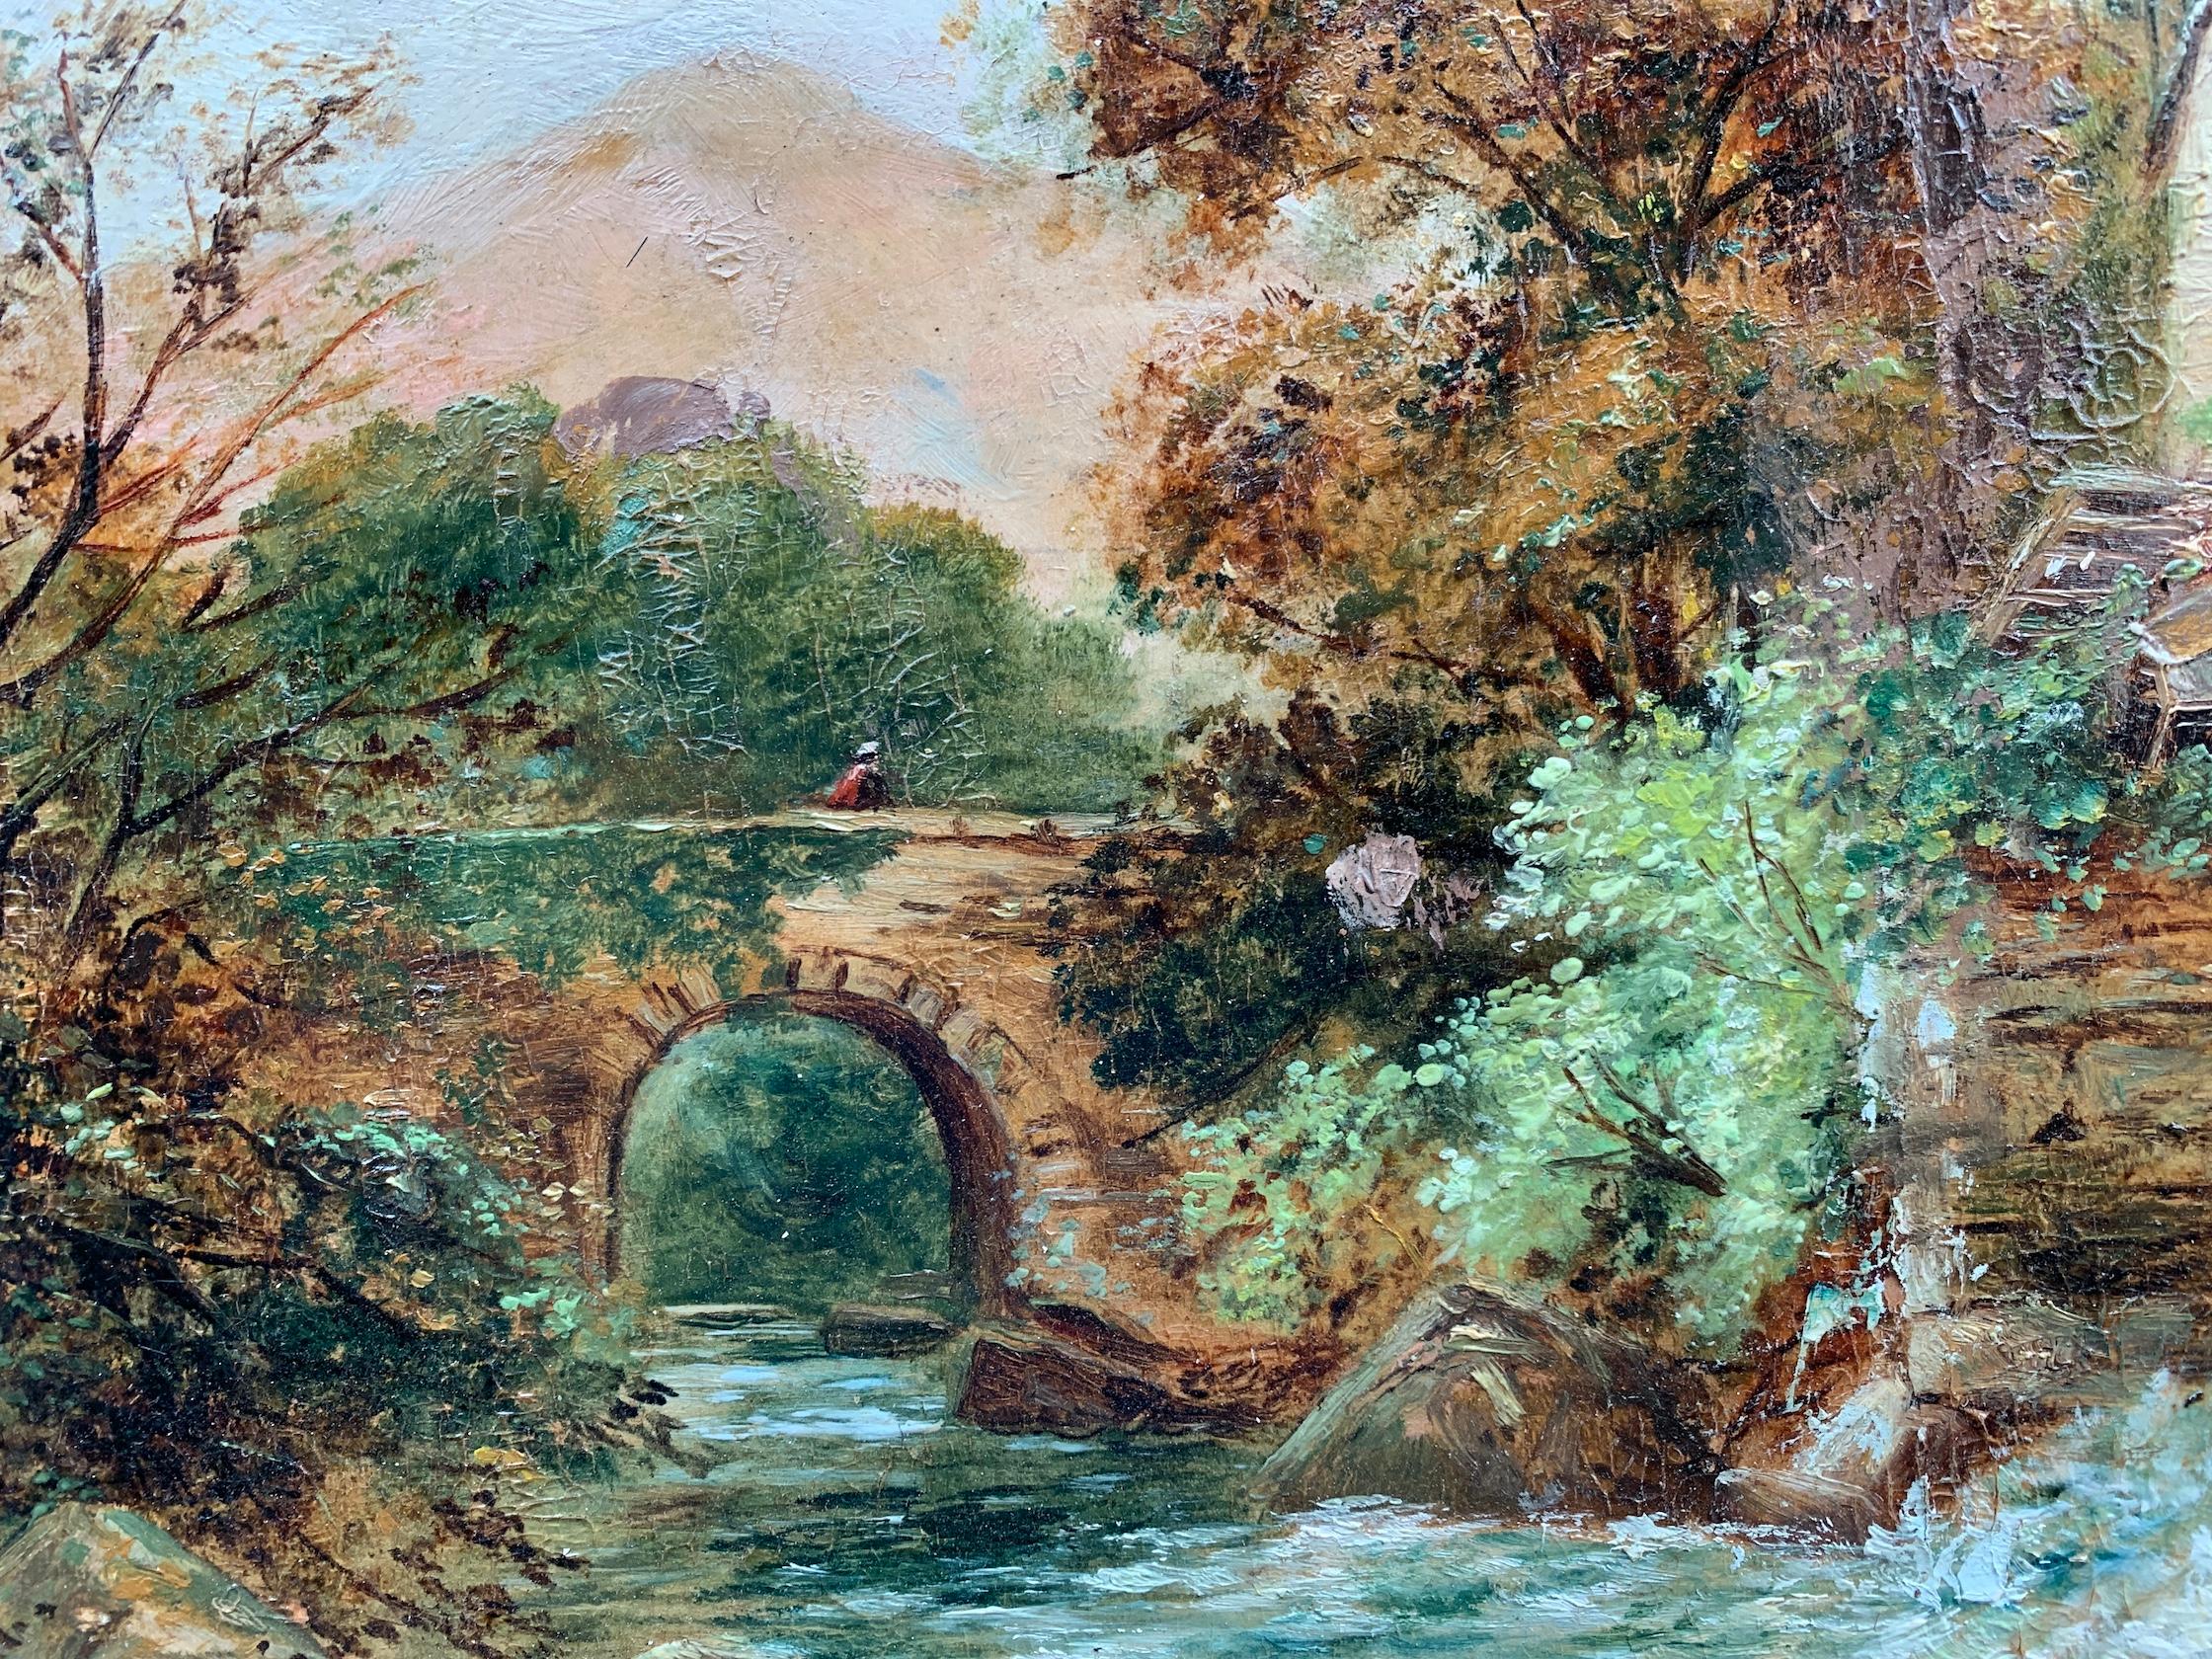 R. Ellis

Englische Landschaft aus dem späten 19. Jahrhundert mit einer Wassermühle an einem Bach und einer Brücke.

Original-Rahmen

Öle auf Karte

Signiert und datiert auf der Rückseite und unten rechts. 

Ellis war ein Landschaftsmaler, der in